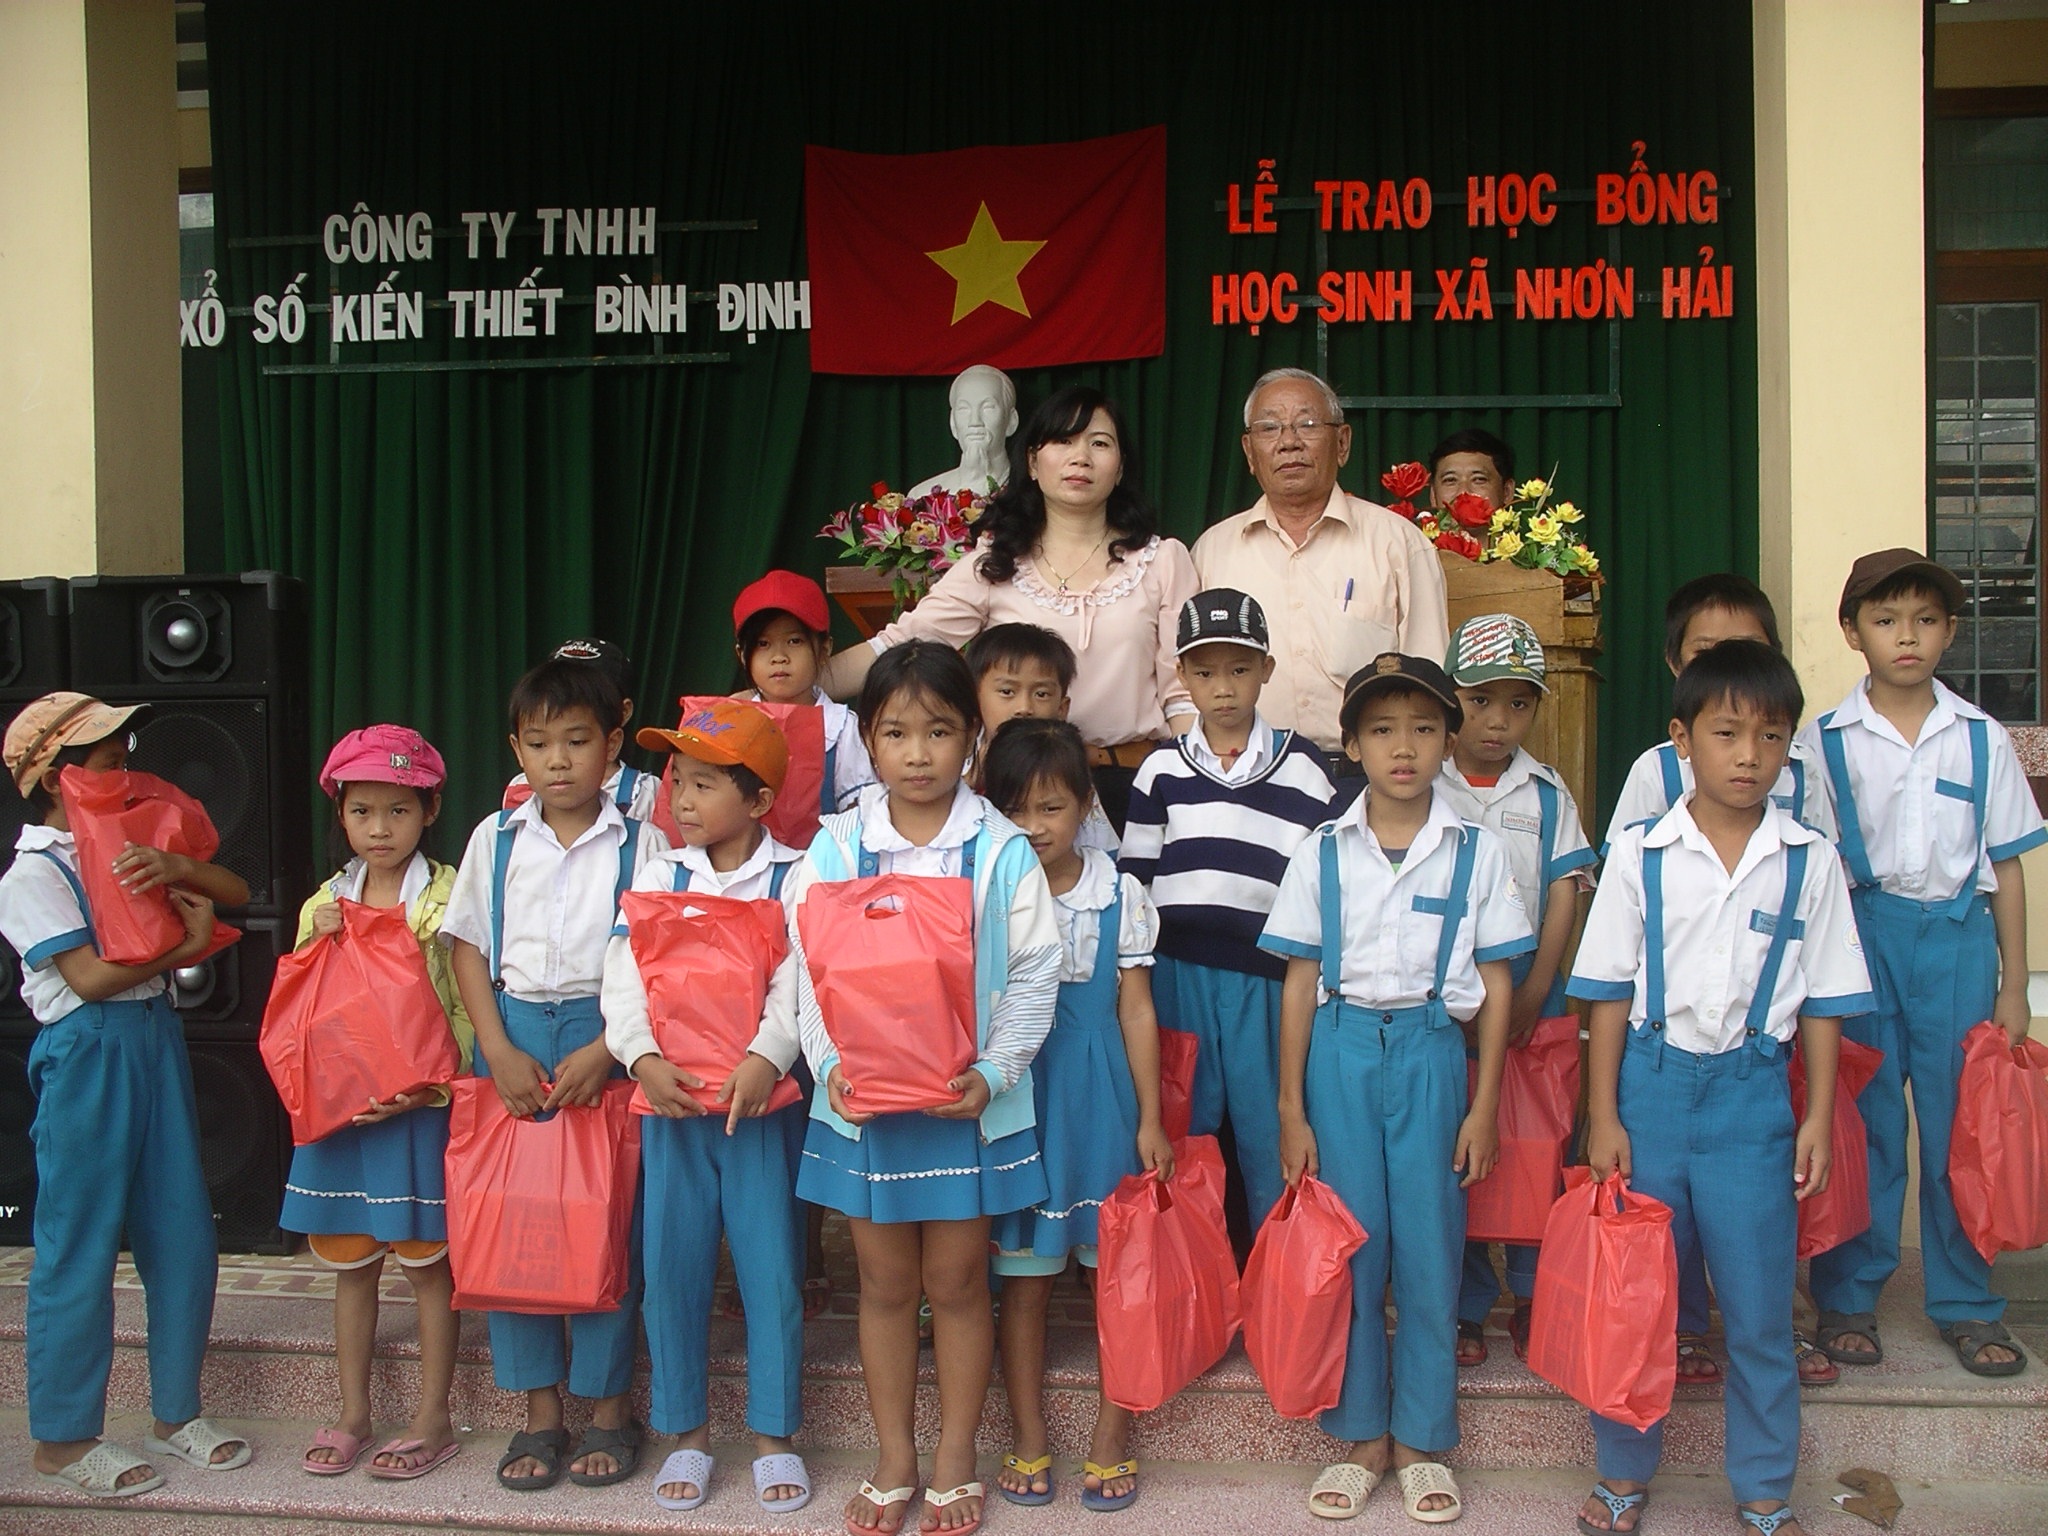 Học sinh nghèo học giỏi xã bán đảo Nhơn Hải nhận quà.